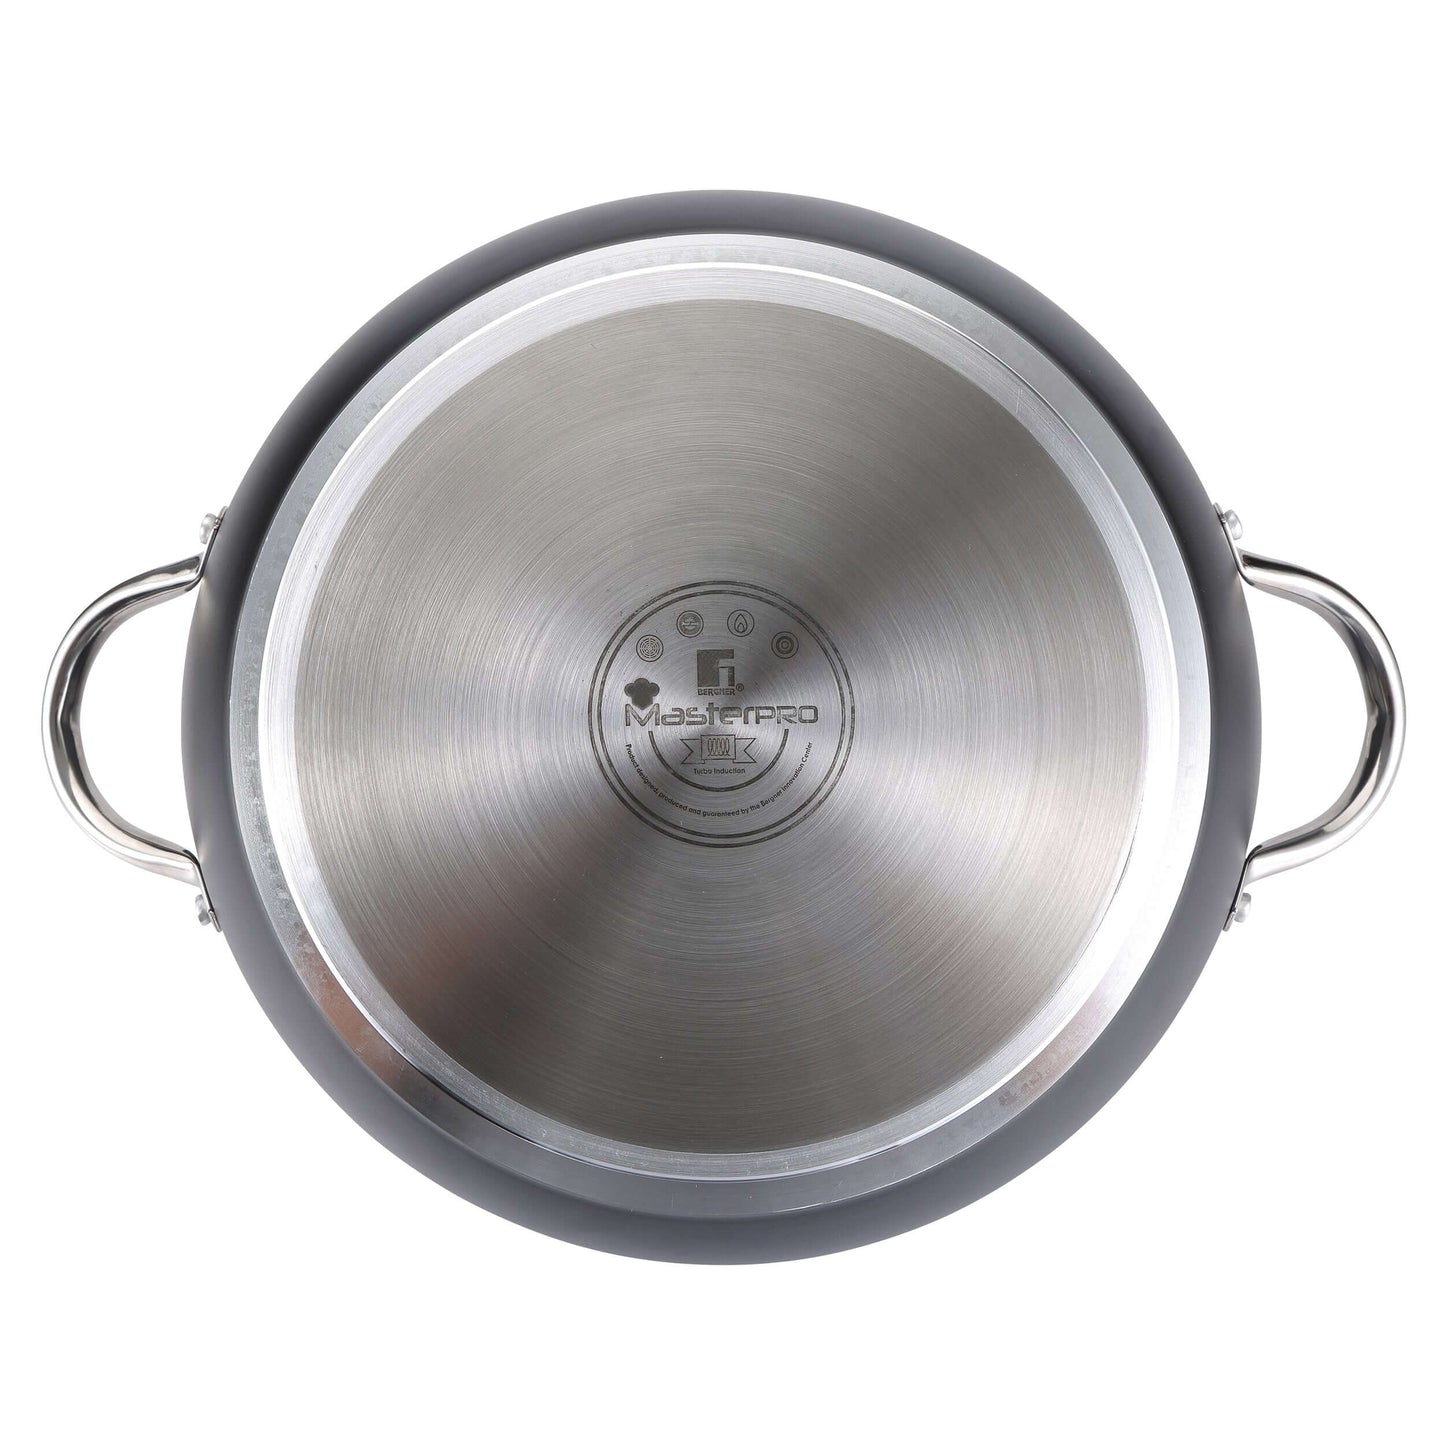 Paellera de Aluminio Forjado 32cm - Foodies